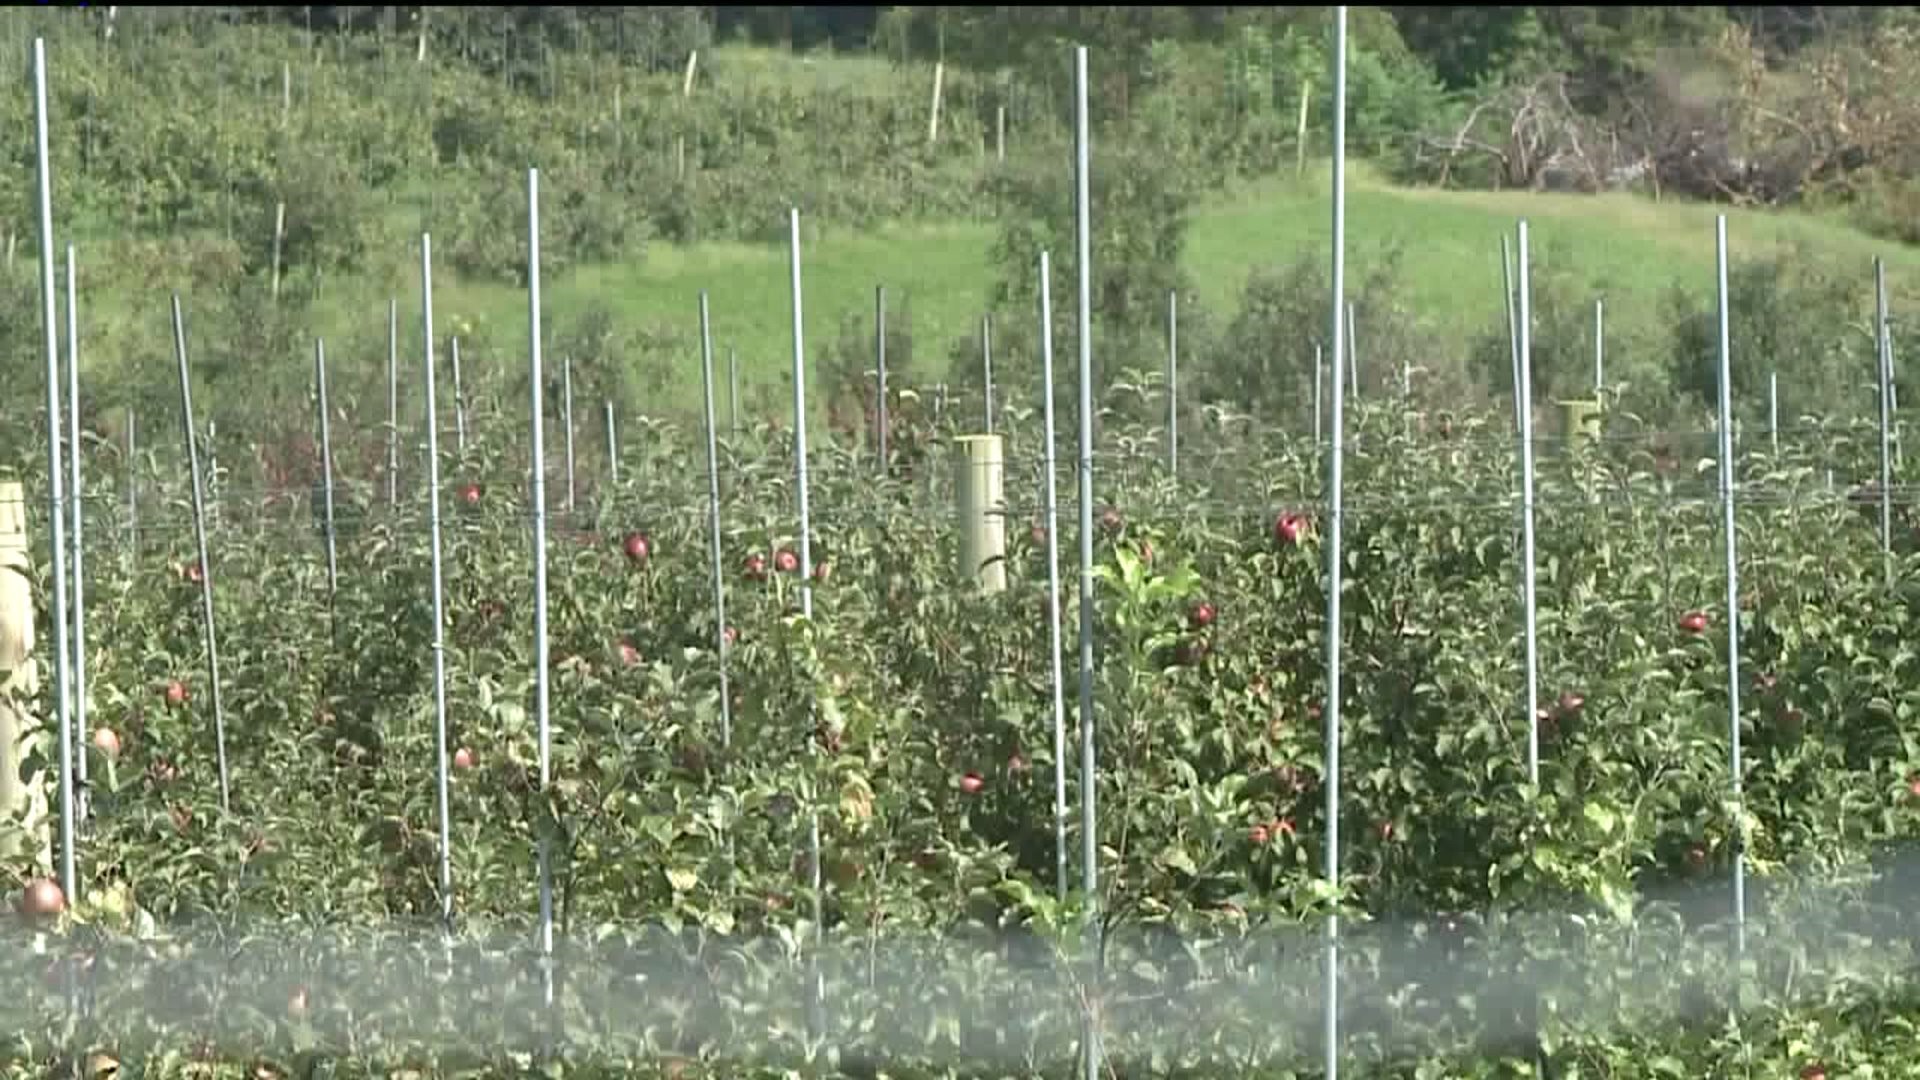 Local Farmer Says Heavy Rainfall Was Hard on Apples